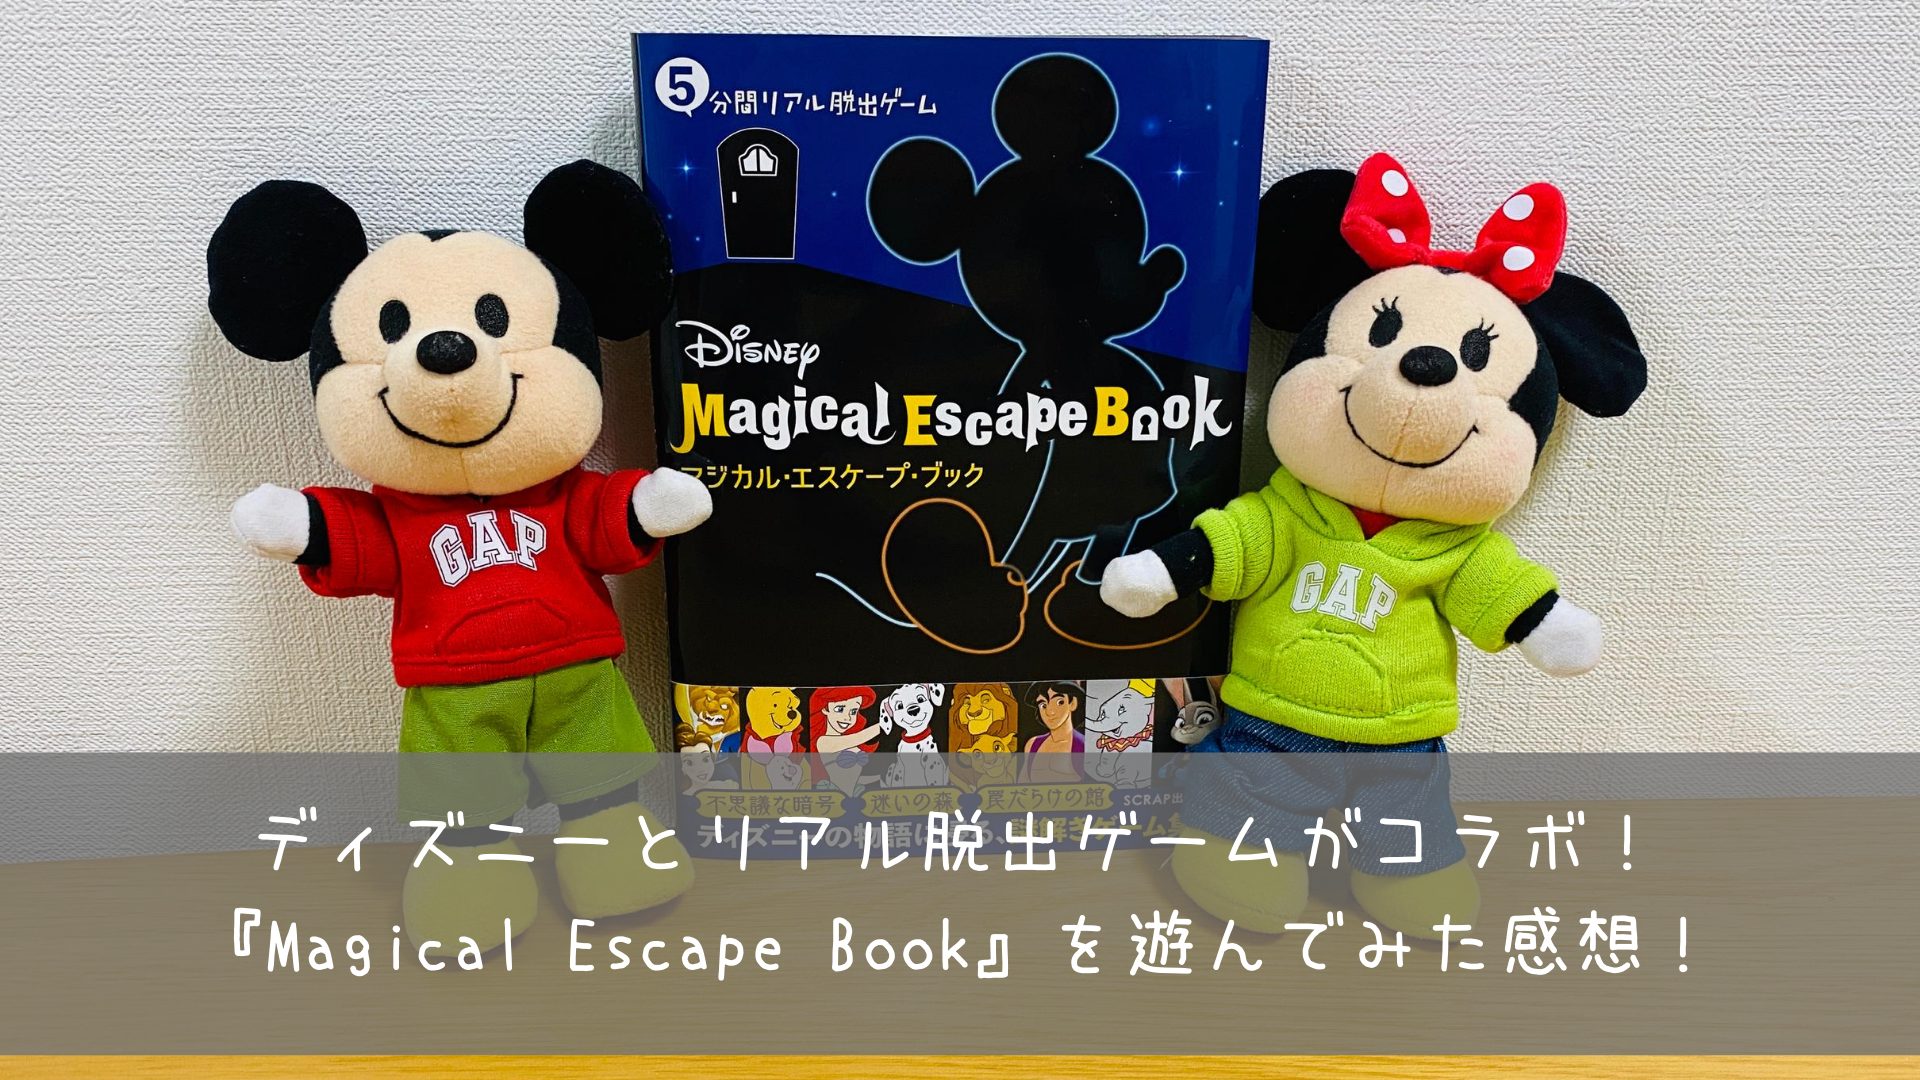 ディズニーの謎解き本 Magical Escape Book を遊んでみた感想 共働きくま夫婦のブログ